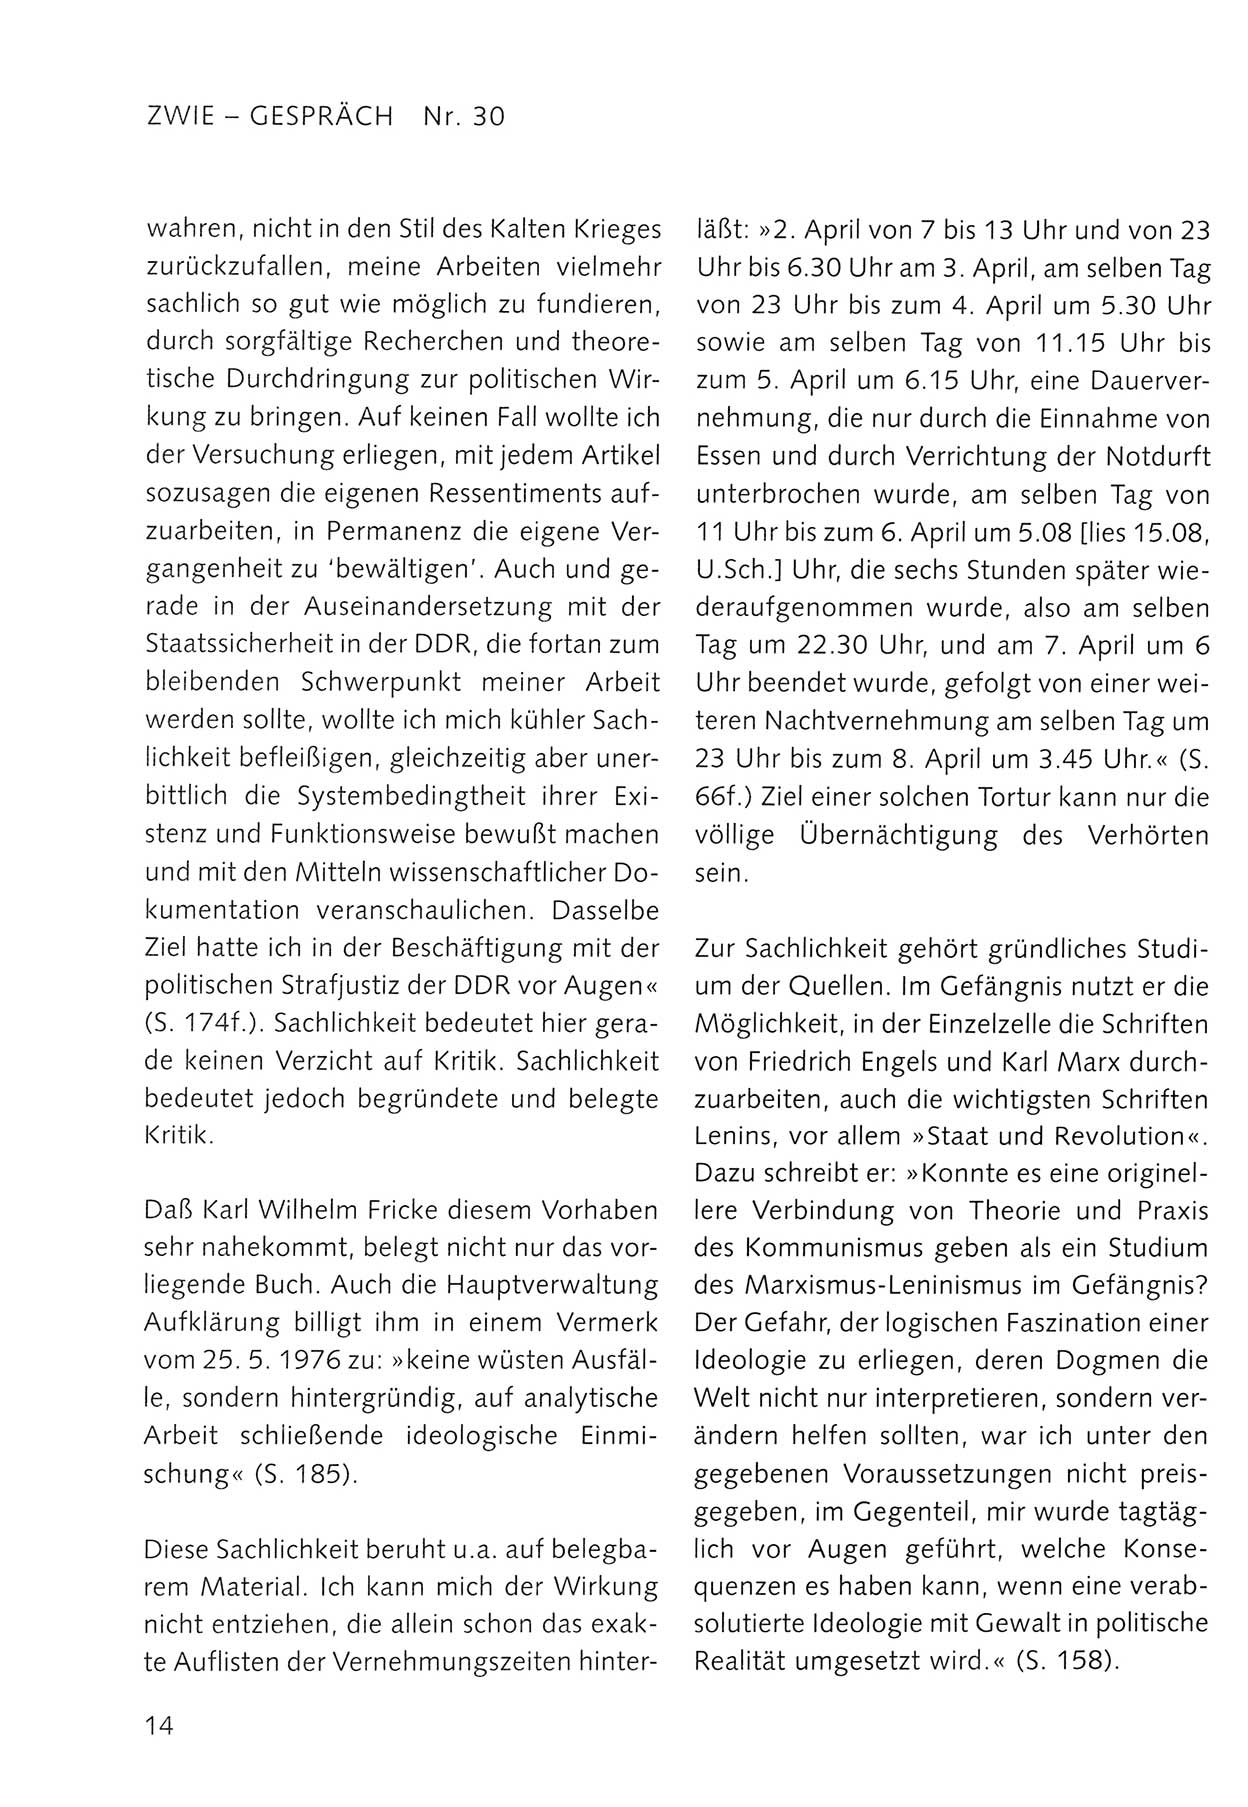 Zwie-Gespräch, Beiträge zum Umgang mit der Staatssicherheits-Vergangenheit [Deutsche Demokratische Republik (DDR)], Ausgabe Nr. 30, Berlin 1995, Seite 14 (Zwie-Gespr. Ausg. 30 1995, S. 14)